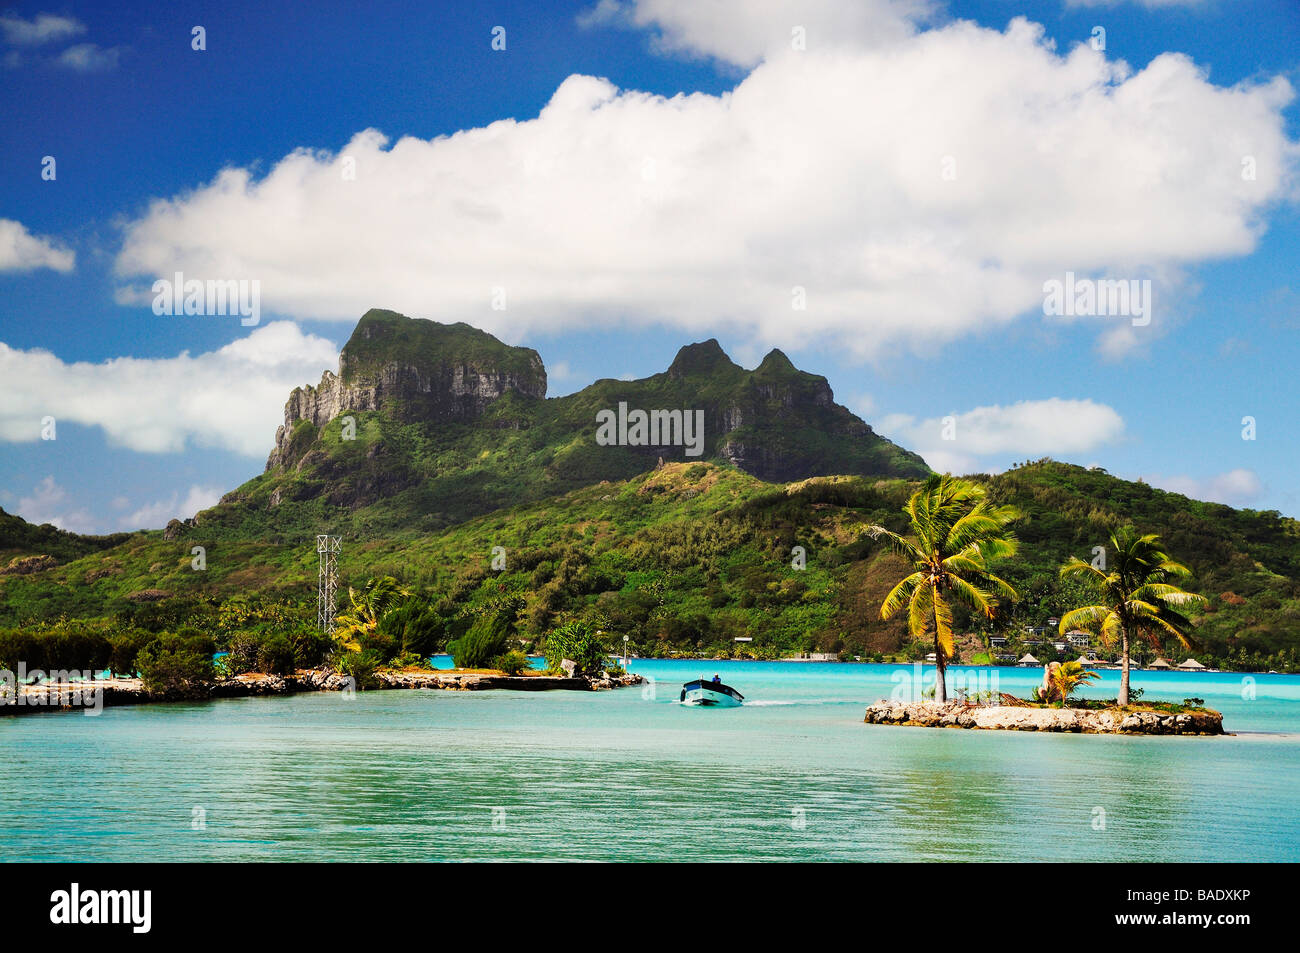 Overview of Bora Bora and Lagoon, French Polynesia Stock Photo